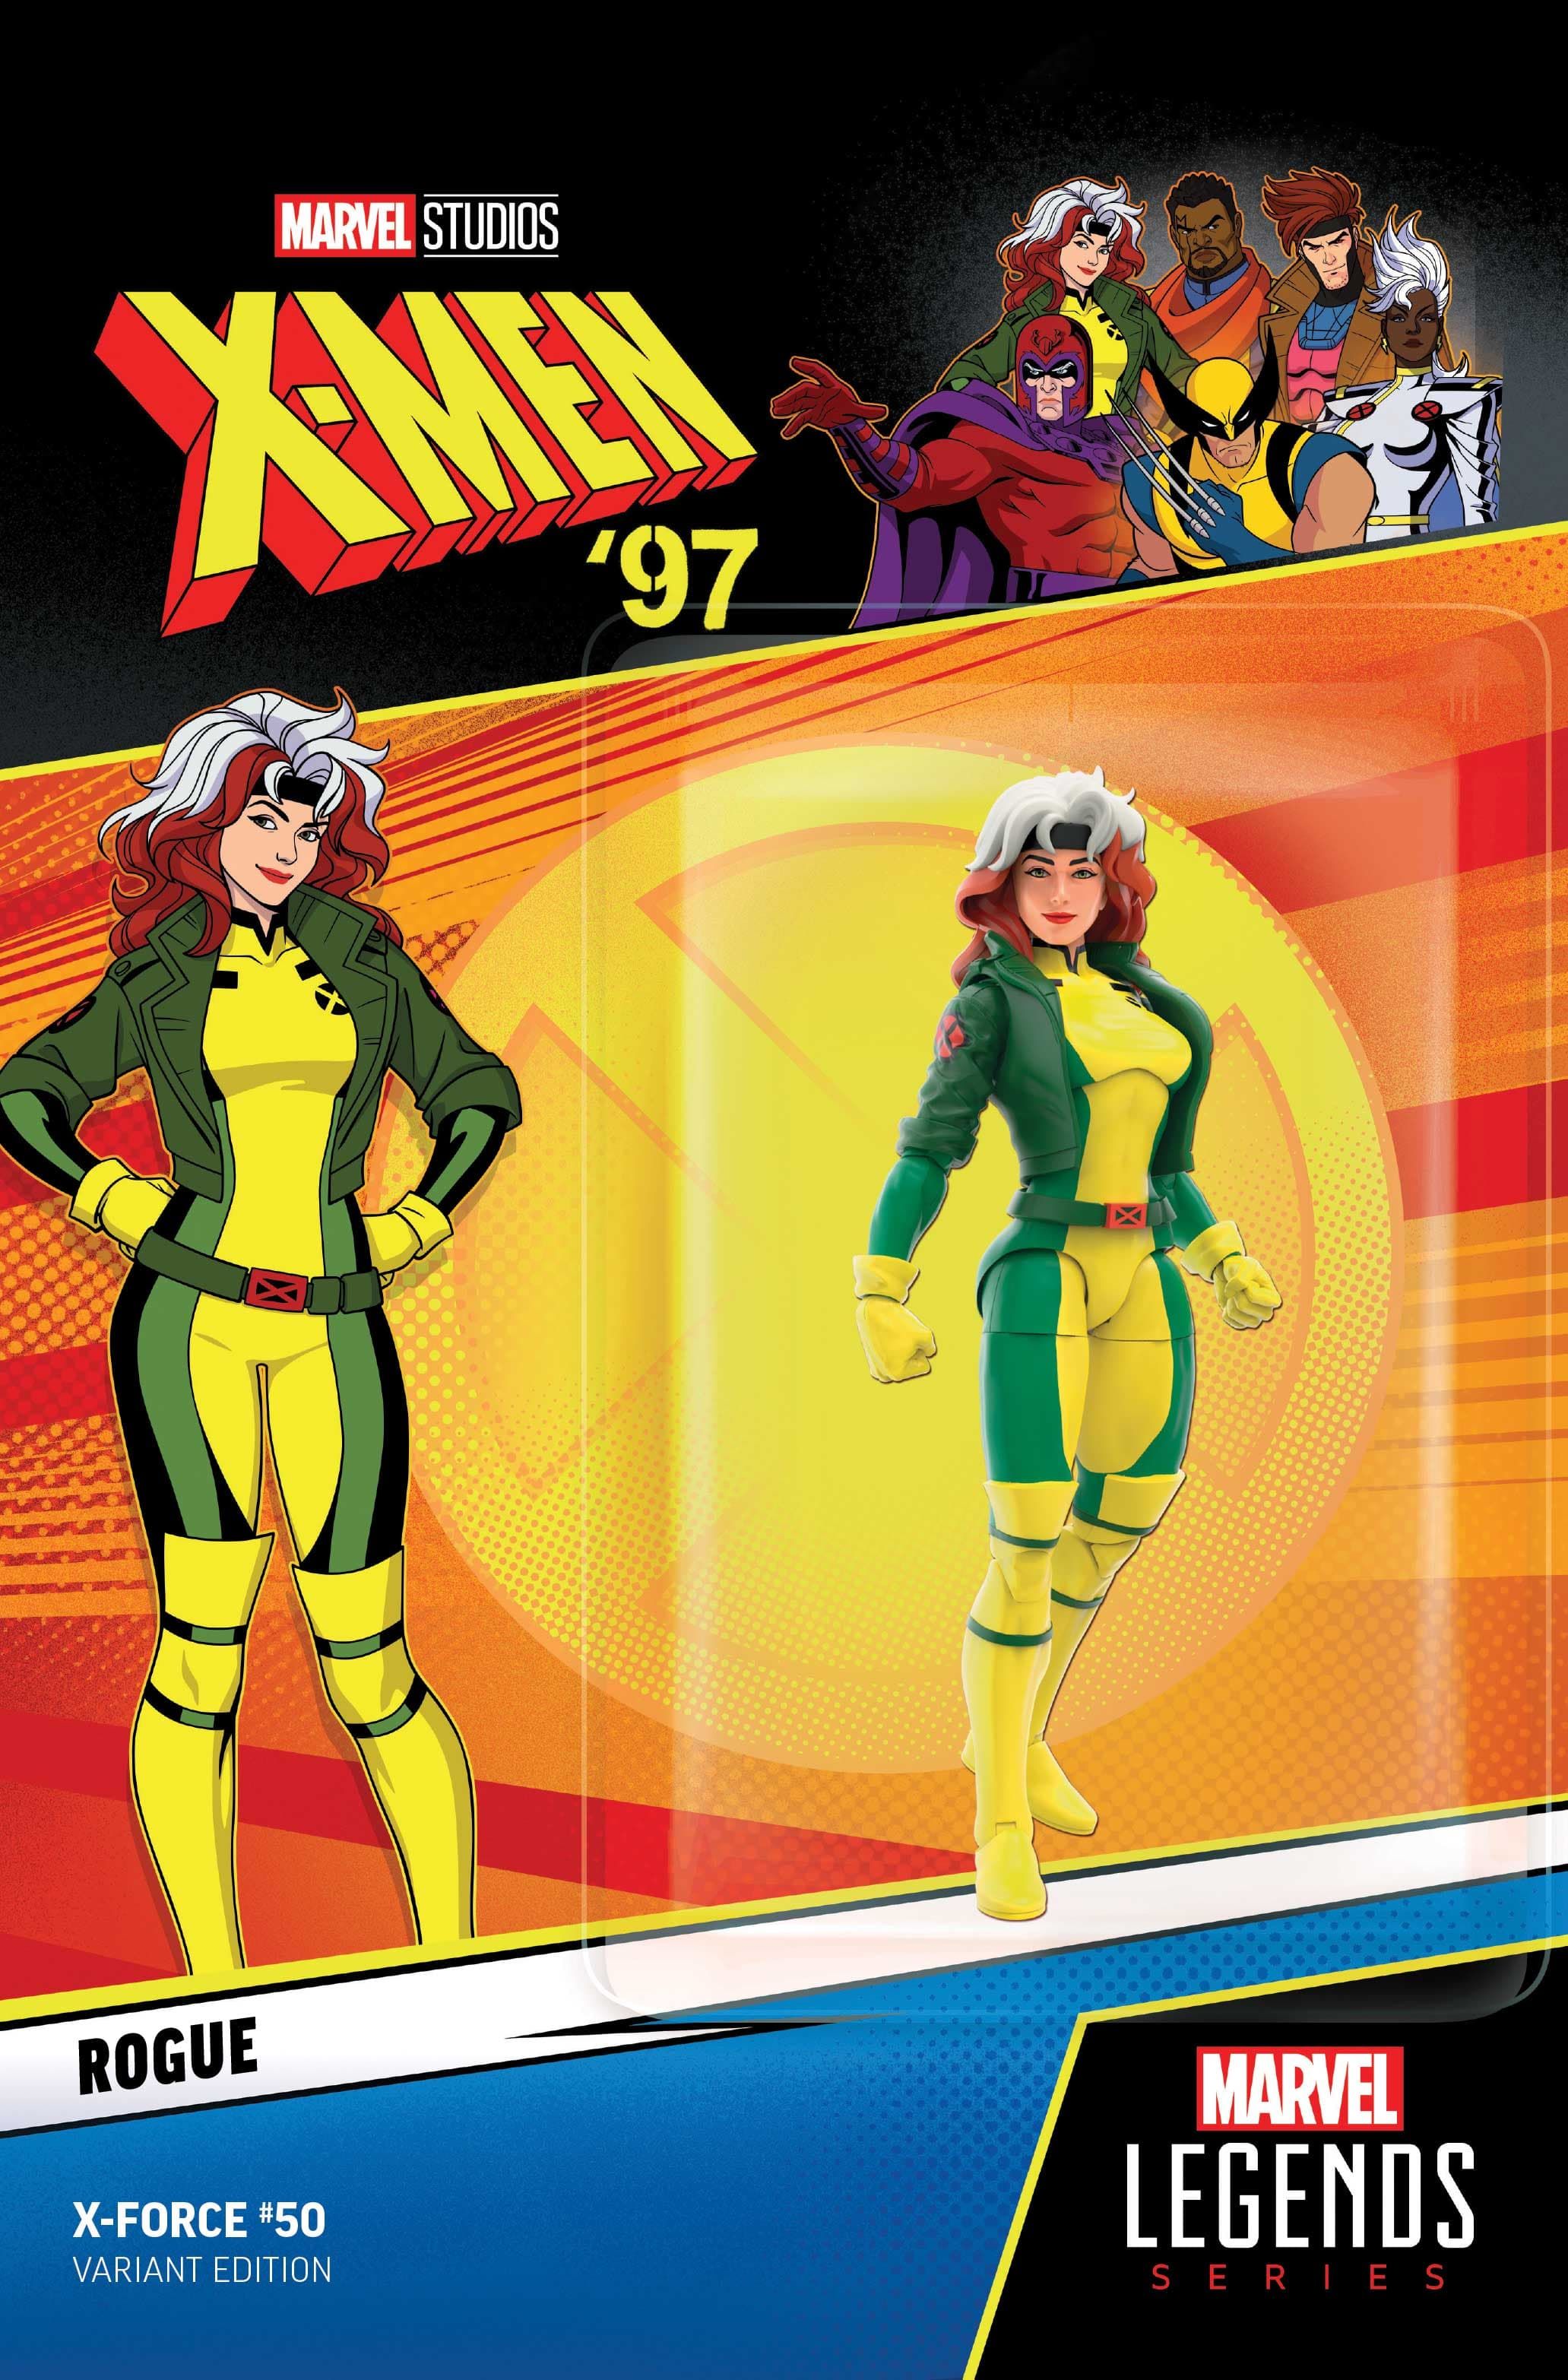 Capa variante de boneco de ação X-Force #50 X-Men 97